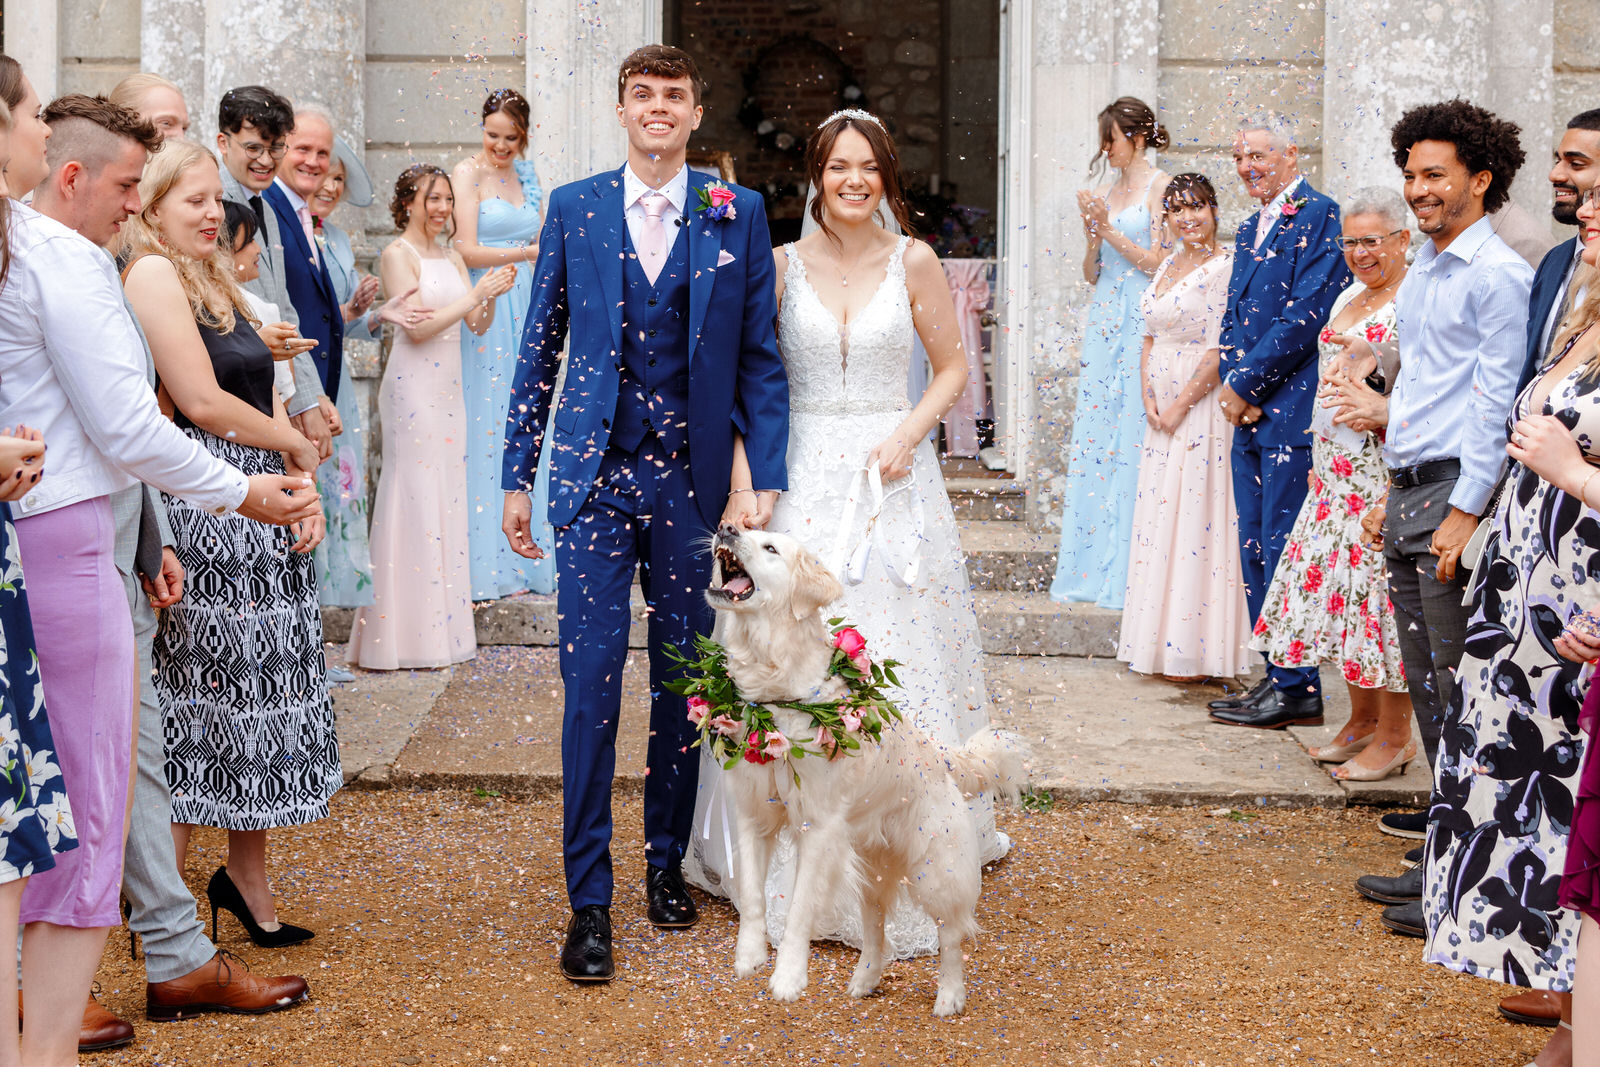 Appuldurcombe House Wedding | Isle of Wight Wedding